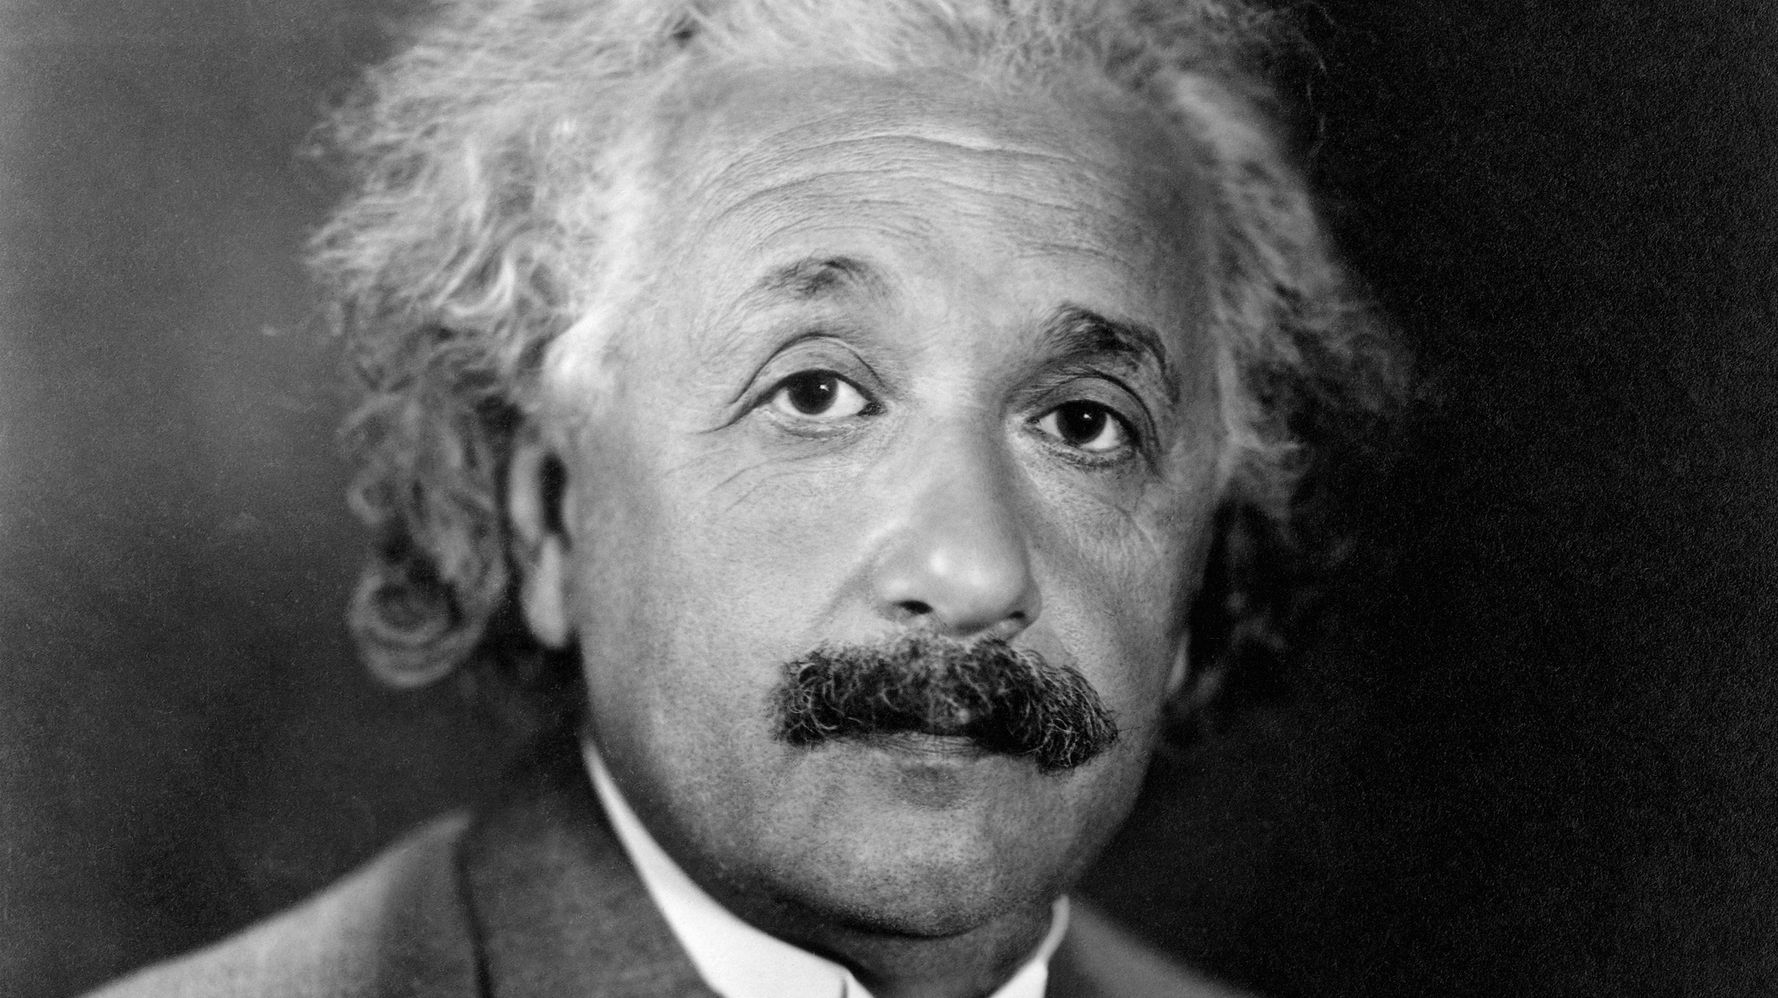 Альберт Эйнштейн фото с языком оригинал